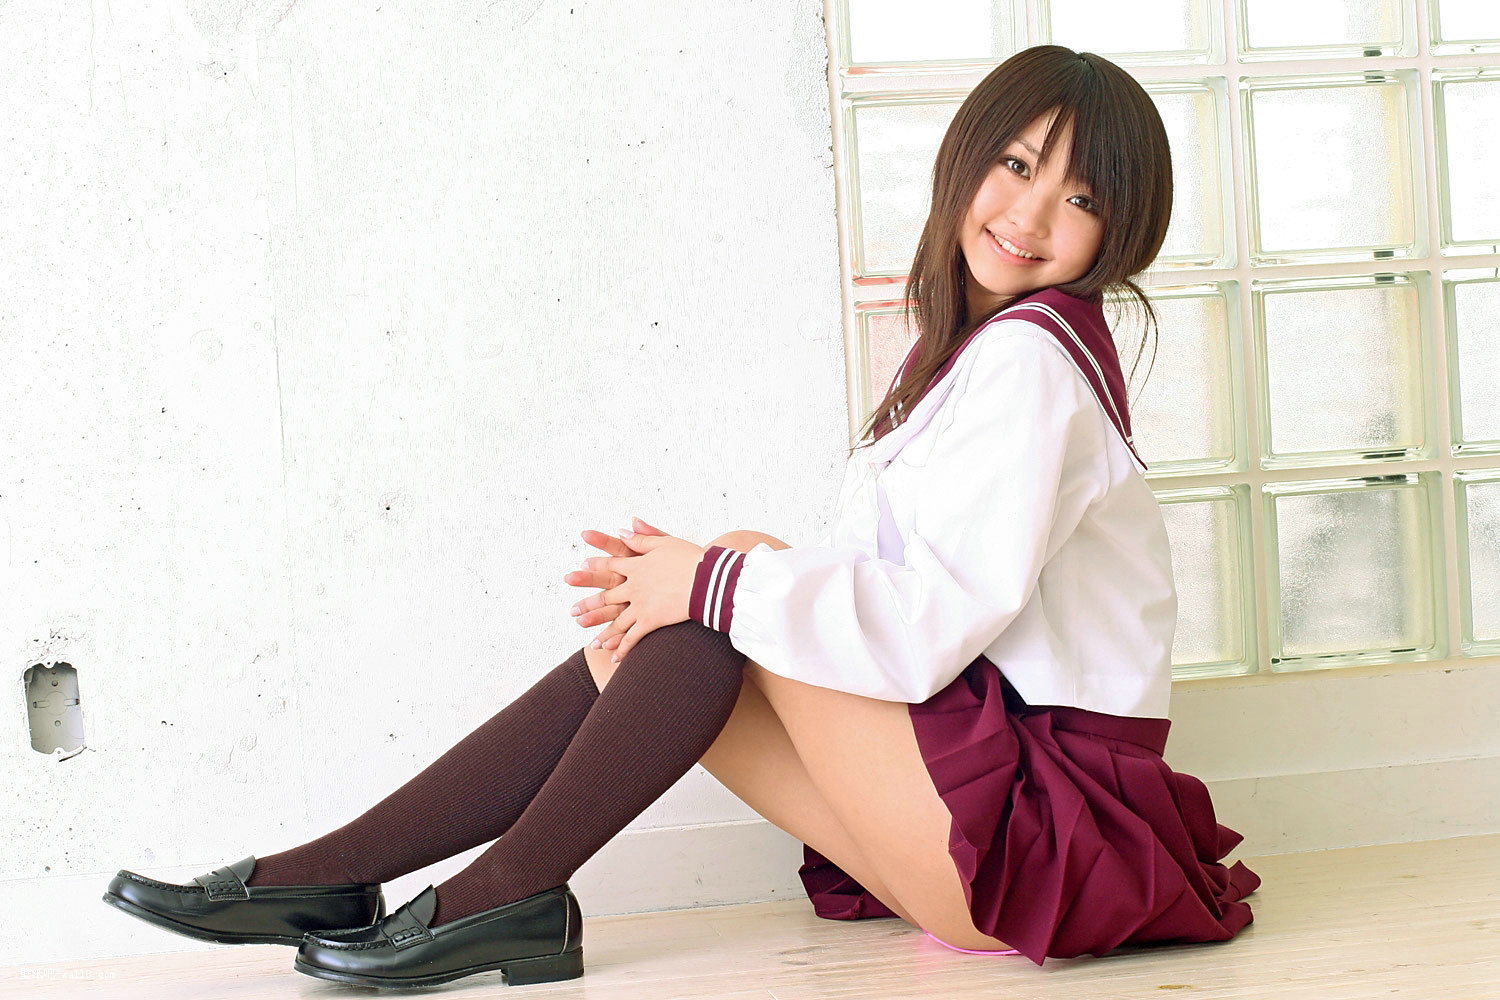 Noriko kago schoolgirl porn japanese home fan compilations